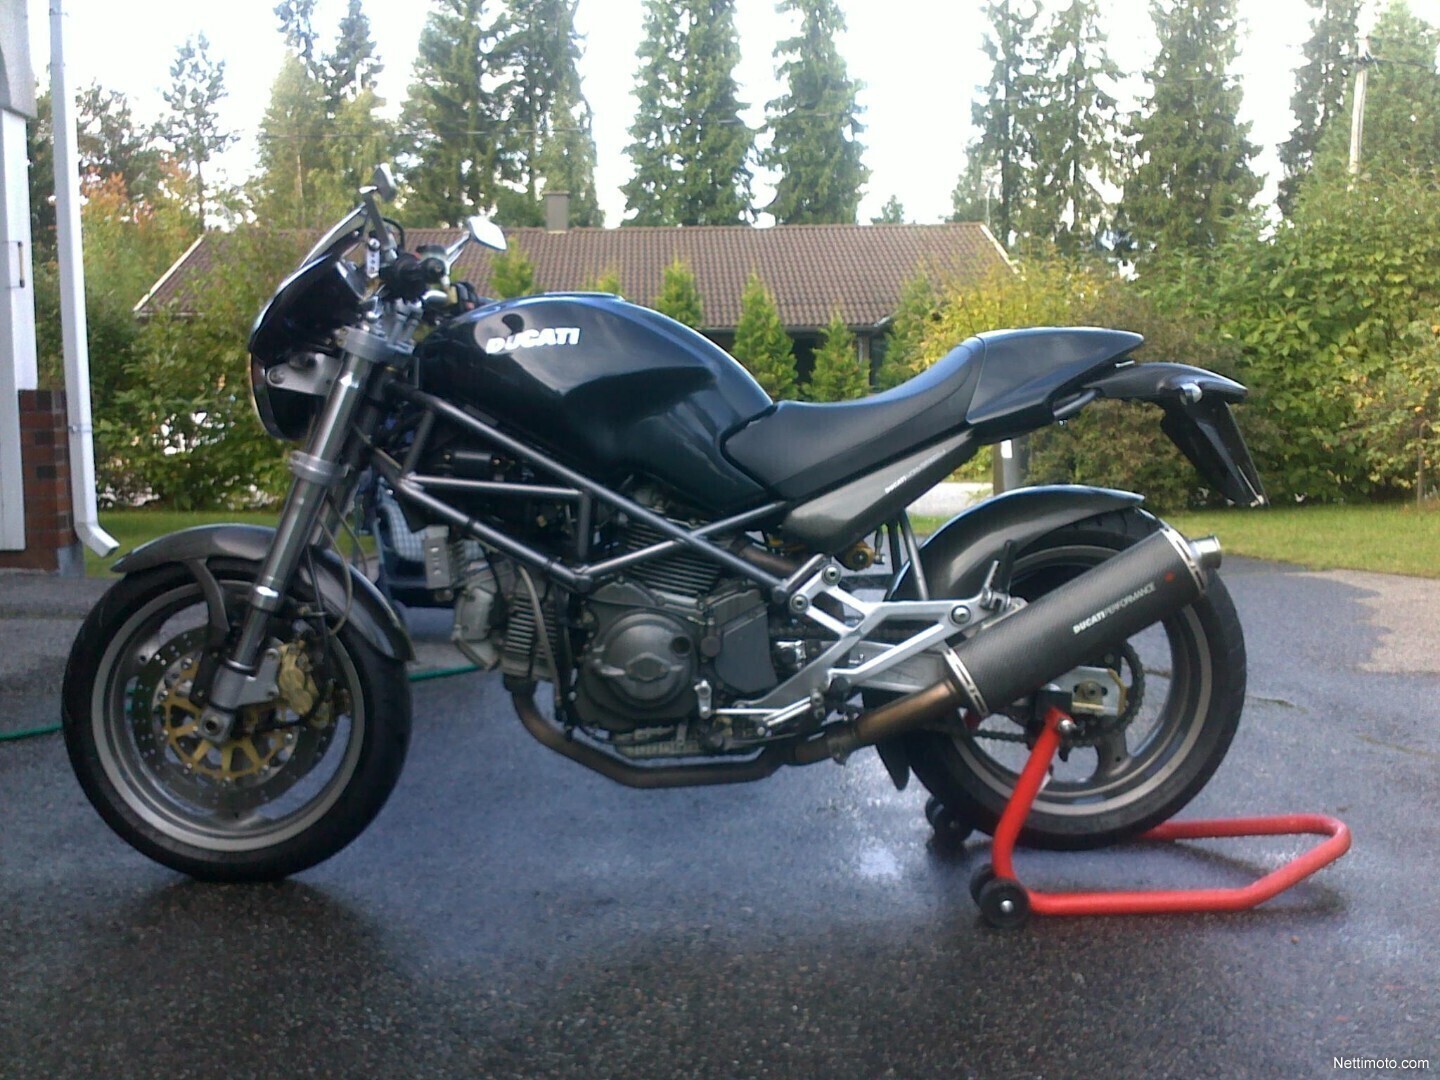 2000 Ducati Monster M 900 S i.e.